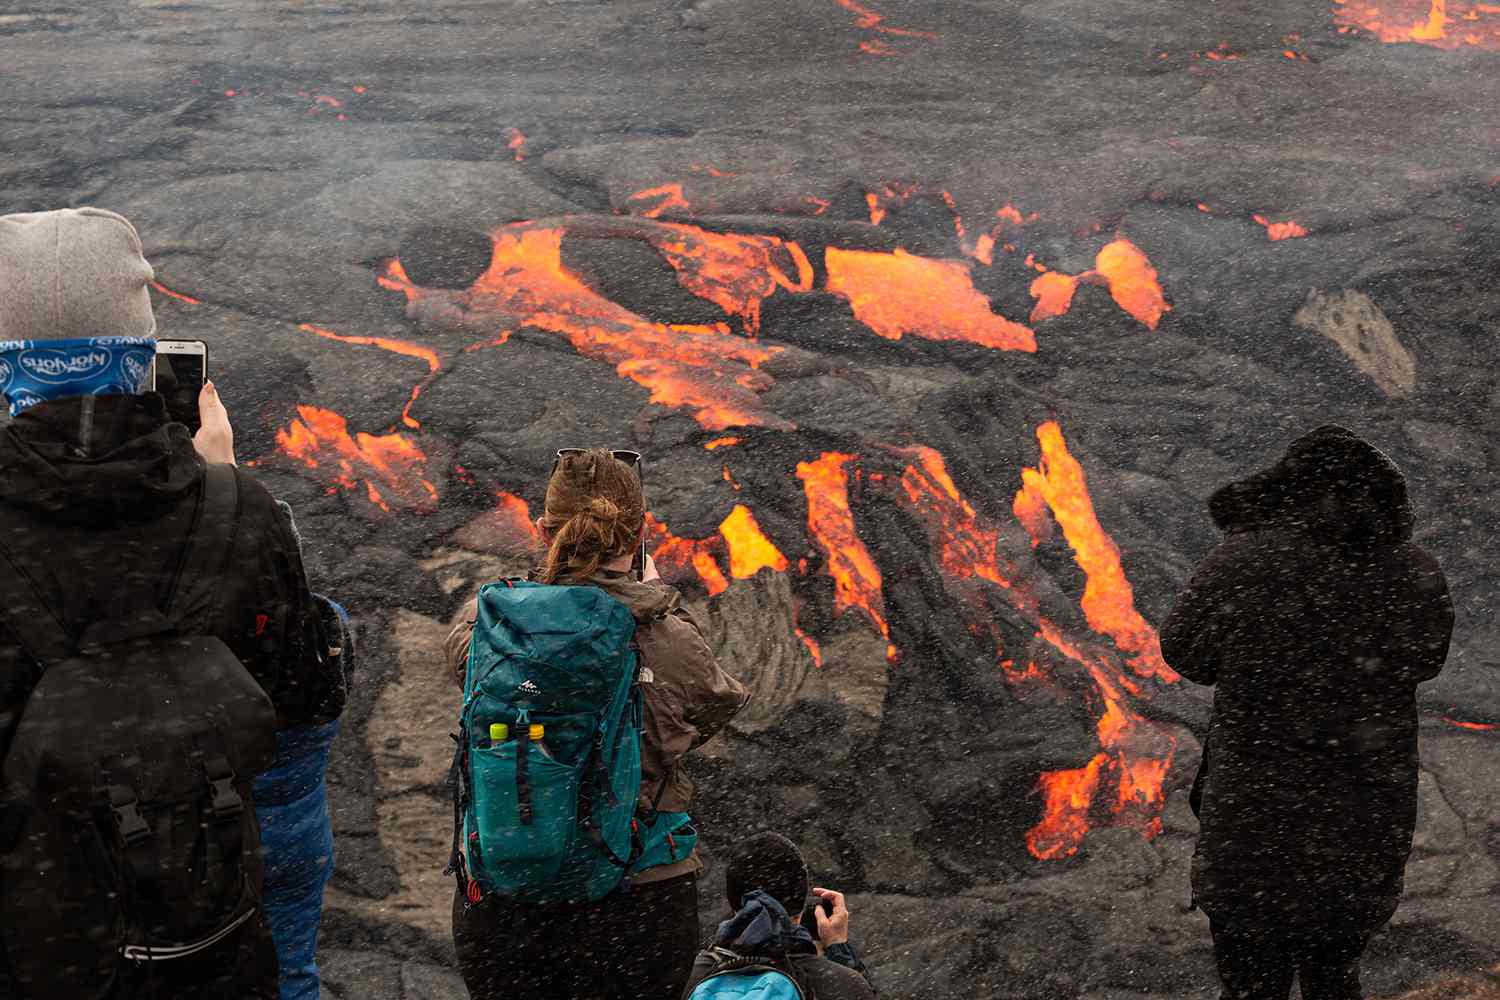 Volcano Erupting in Iceland